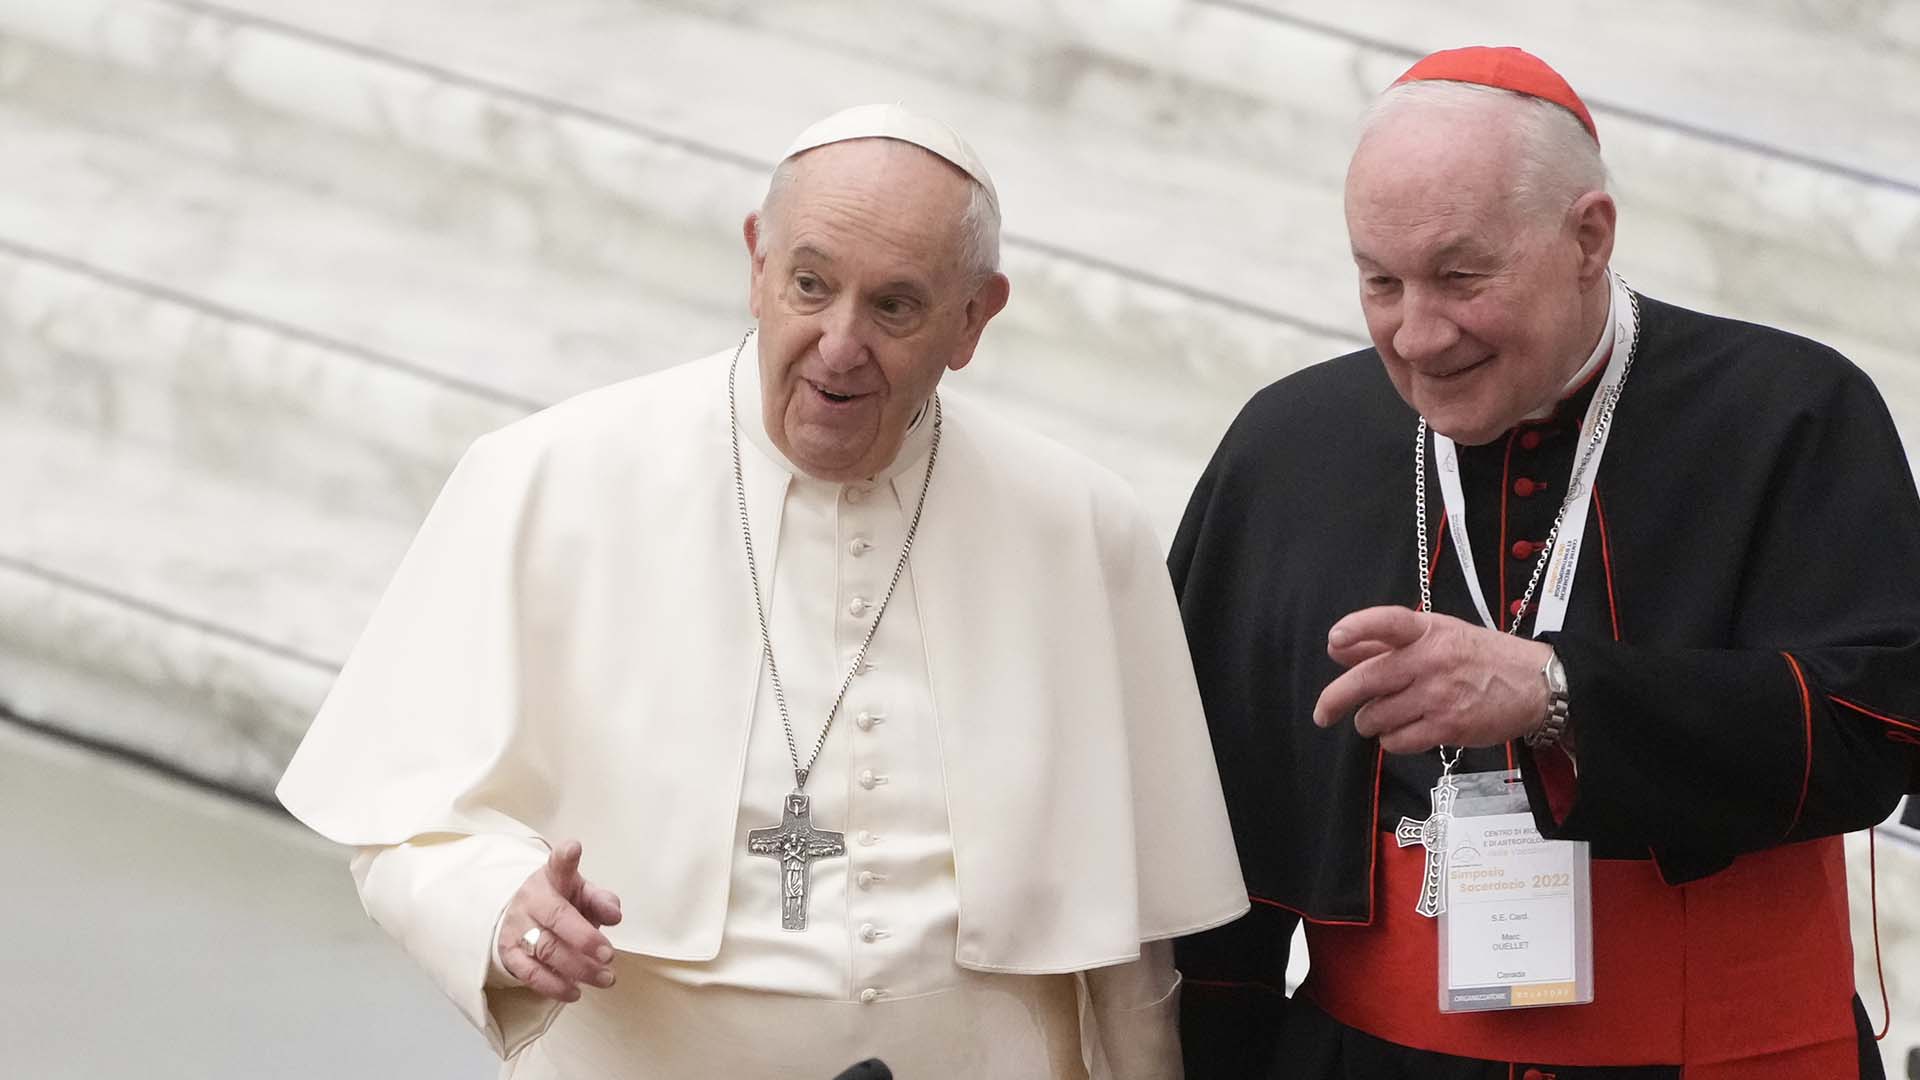 Le pape François (à gauche) décide de ne pas ouvrir une «enquête canonique pour agression sexuelle» par le cardinal Marc Ouellet (à droite), faute «d’éléments suffisants». Sur la photo, le Saint-Père et l'homme fort québécois du Vatican discutent lors d'un événement en février 2022.